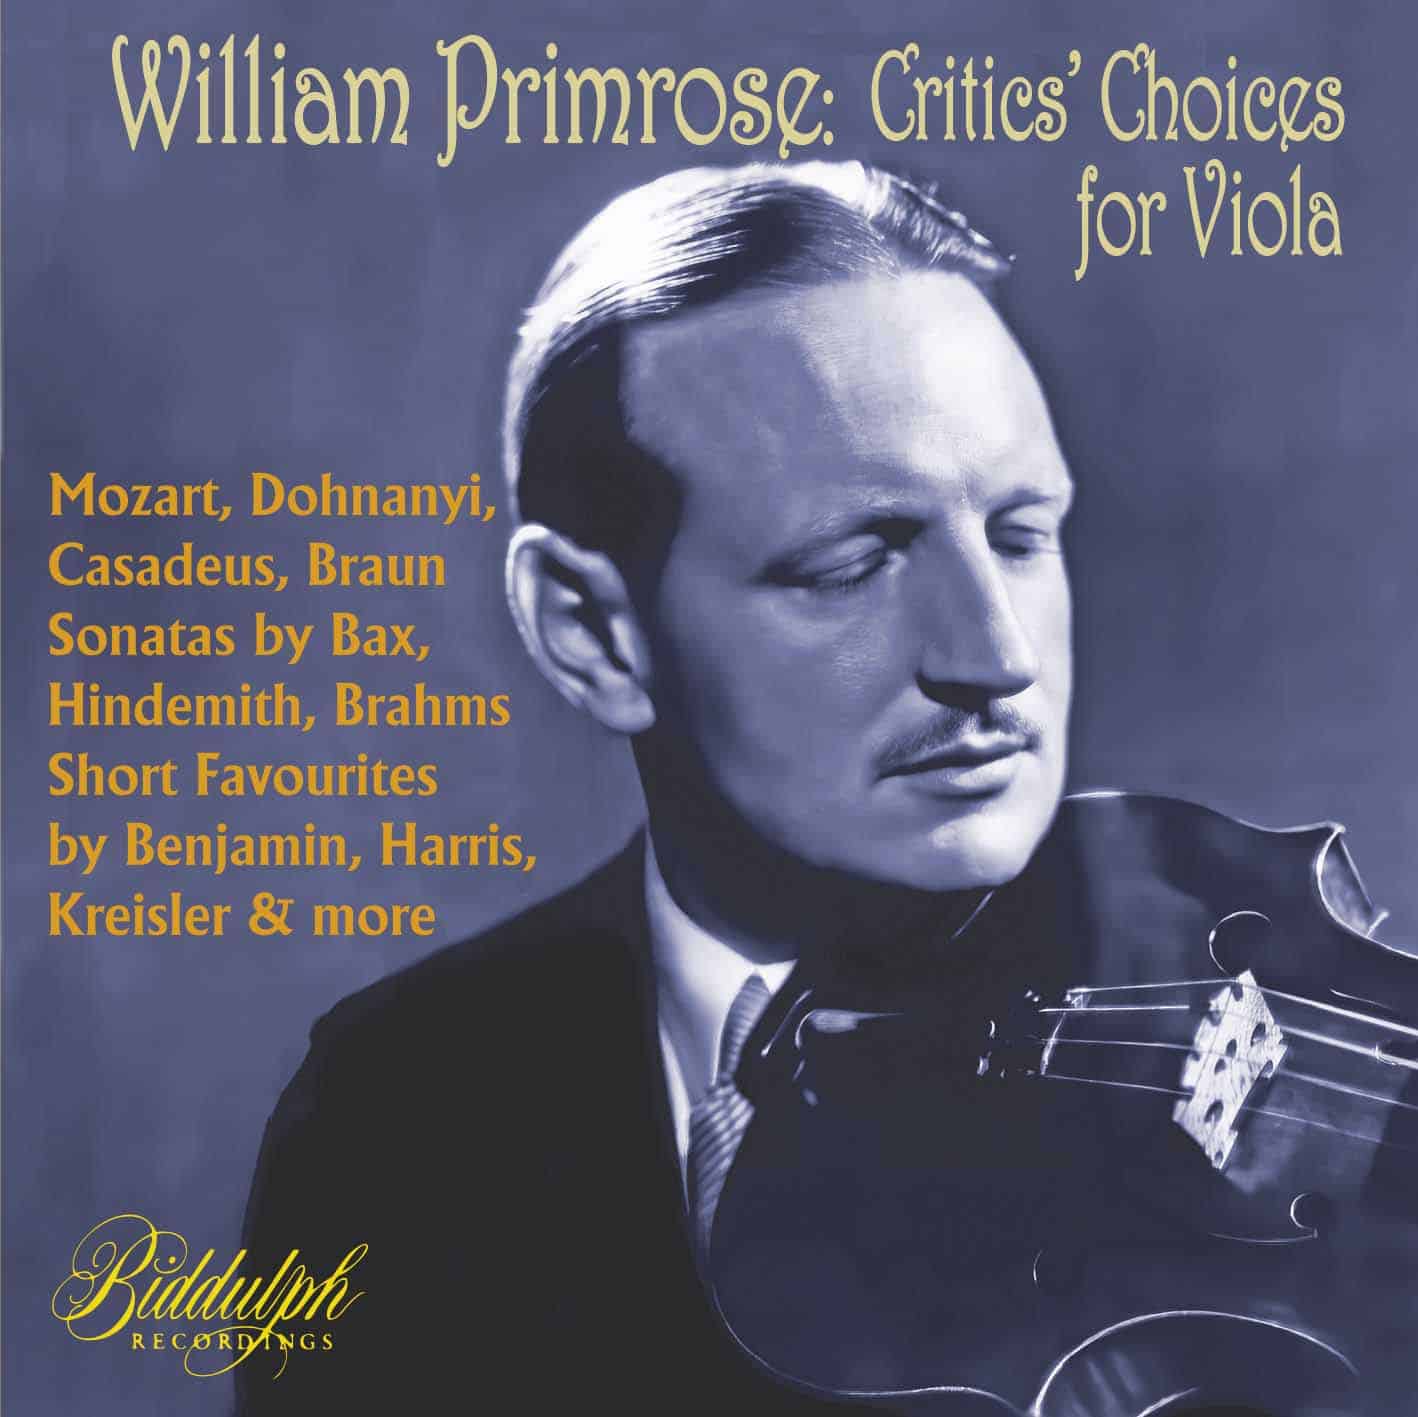 William Primrose: Critics’ Choices for Viola